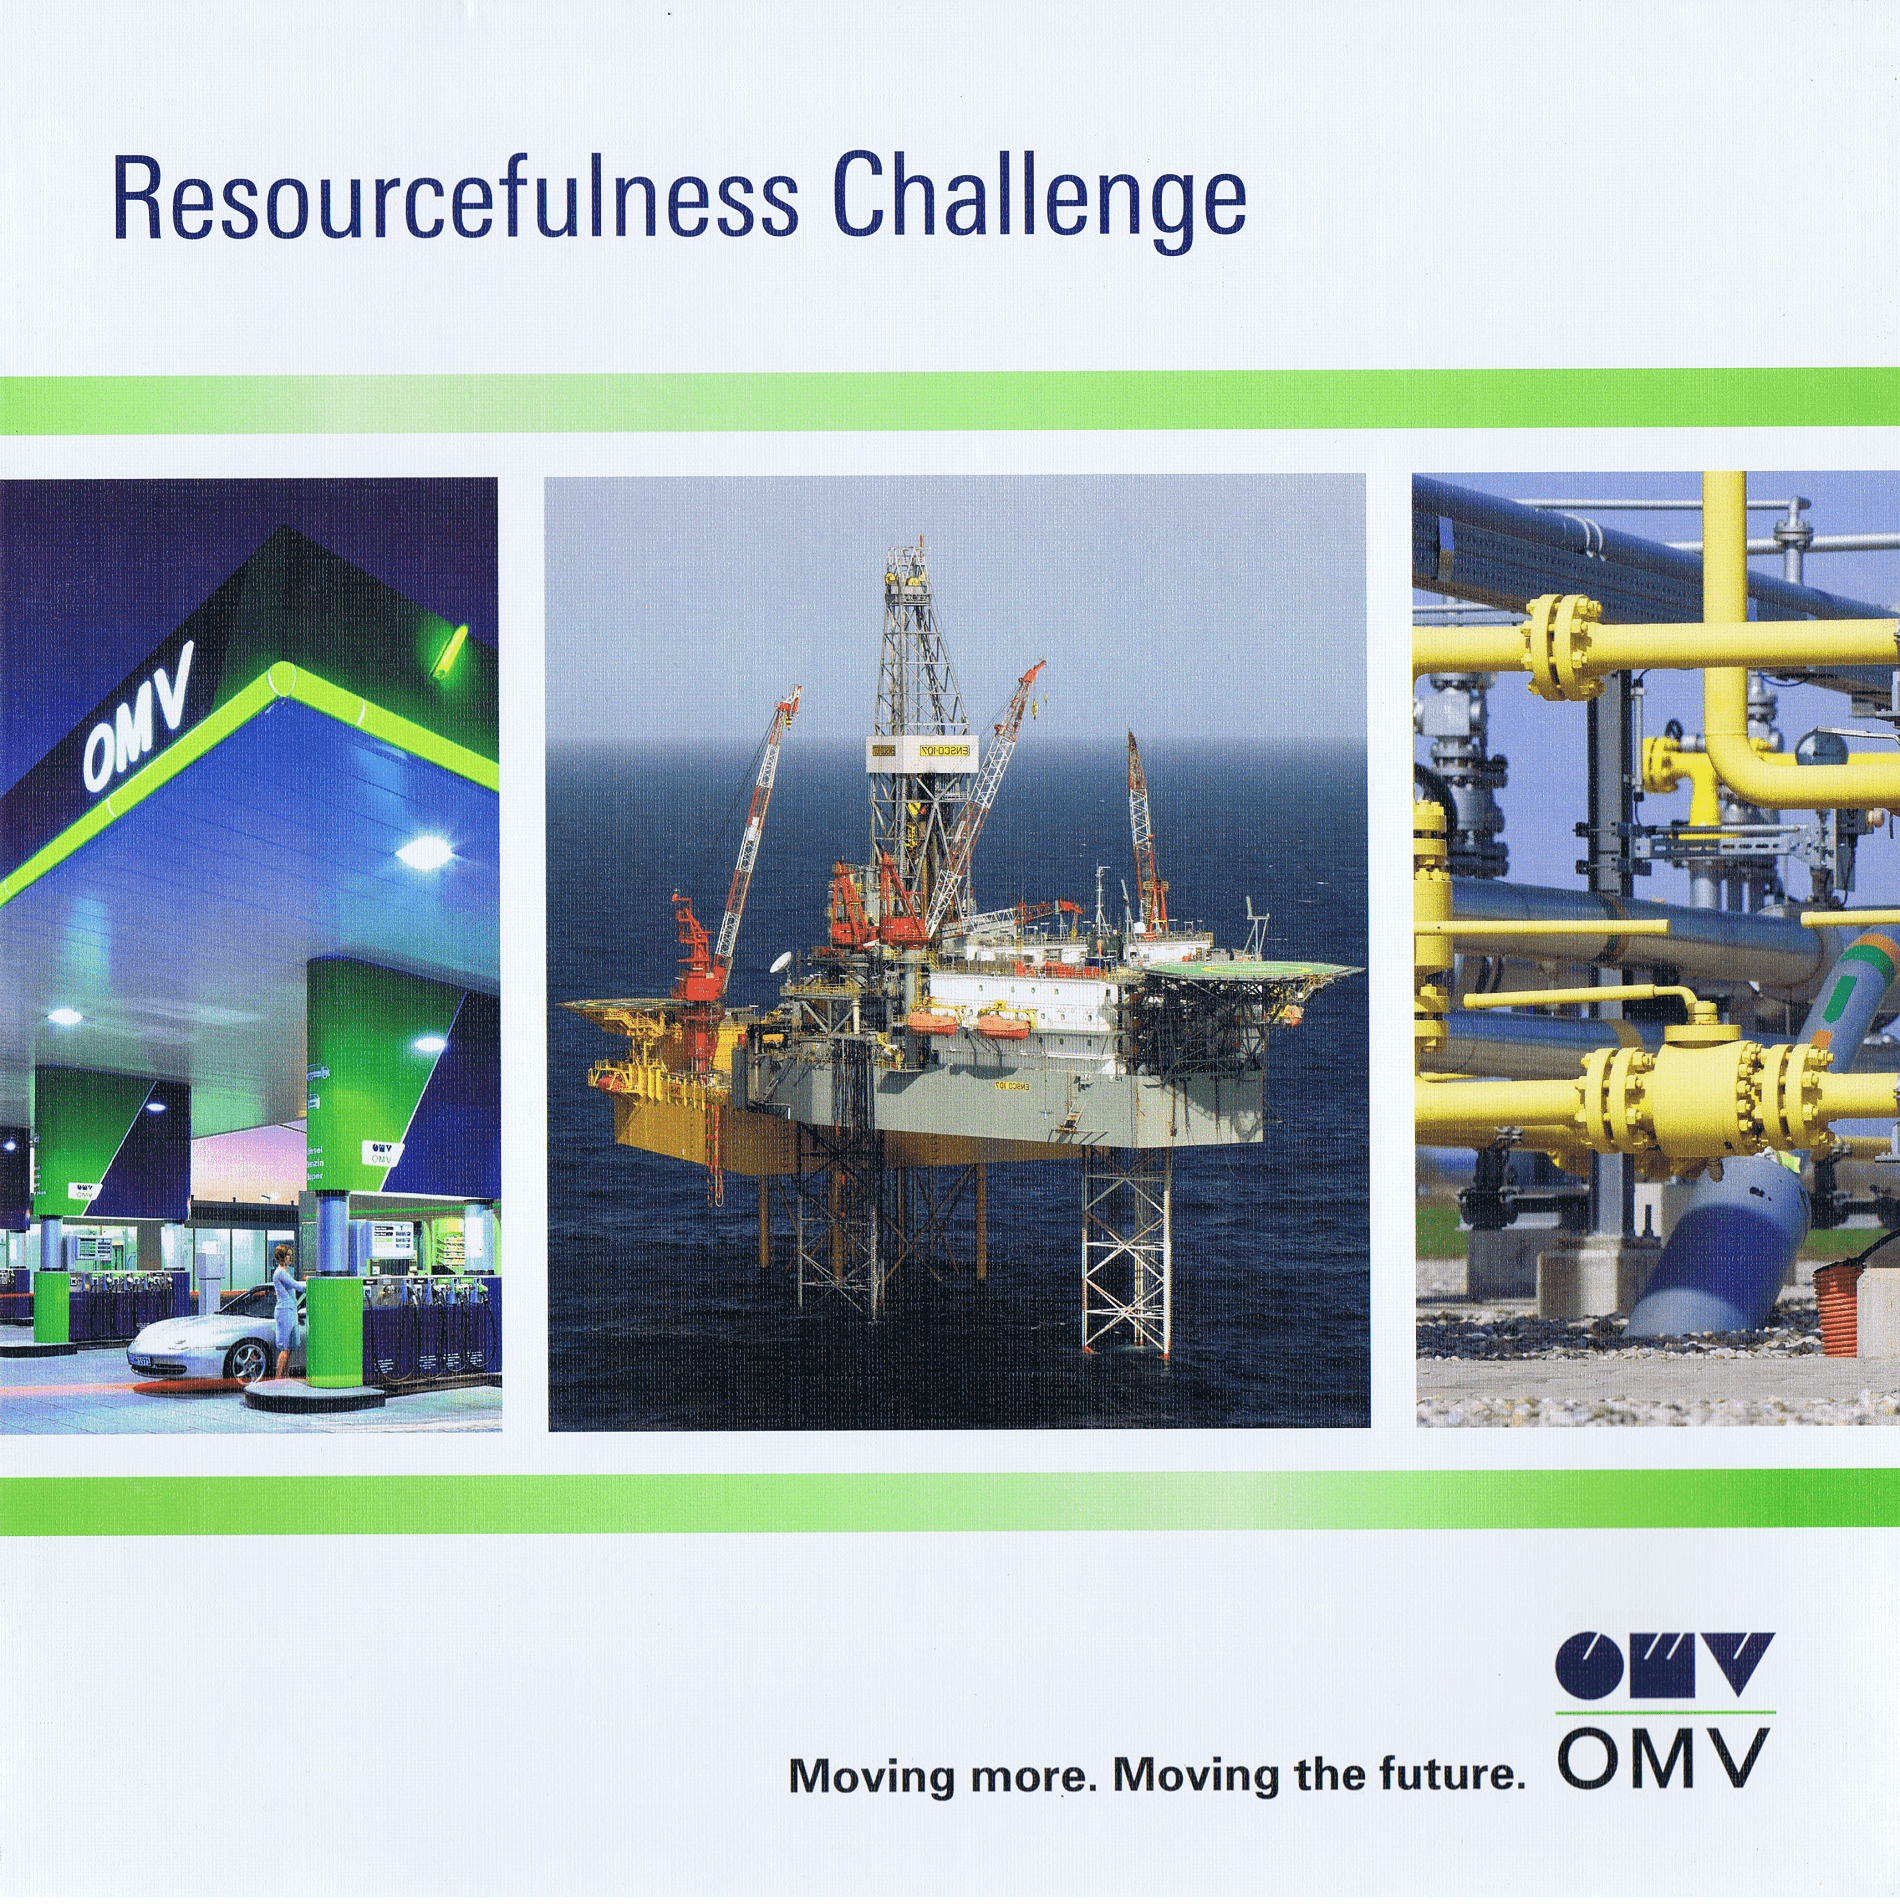 OMV Resourcefulness Challenge